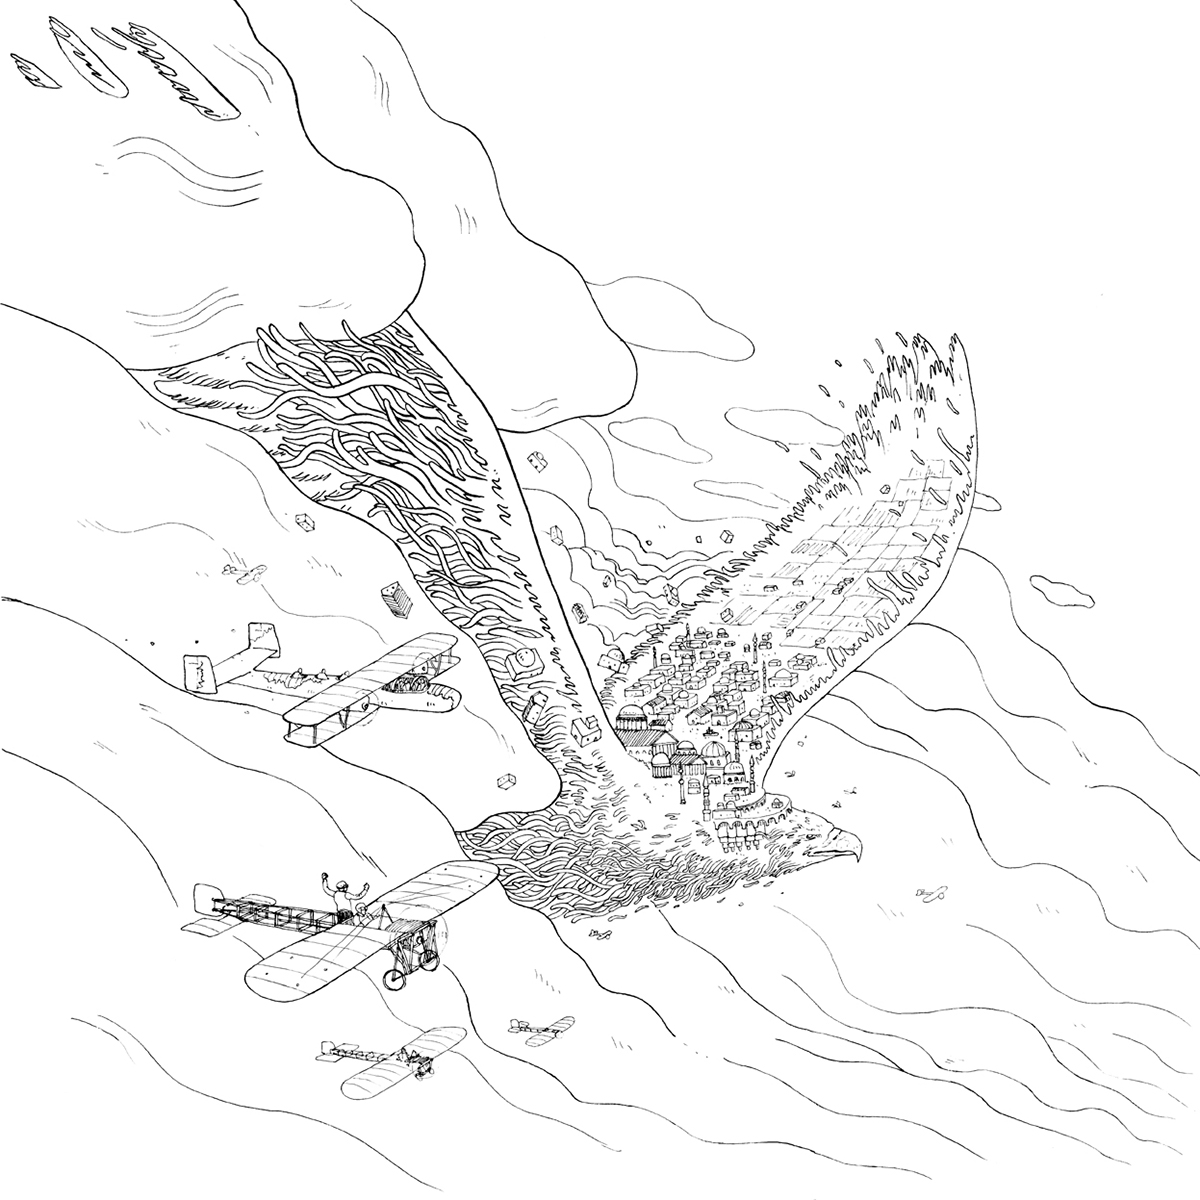 Illustrator dossier creative surrealism imagination psychedelic gioconda augustus eagle Civilization fantasy digital ink